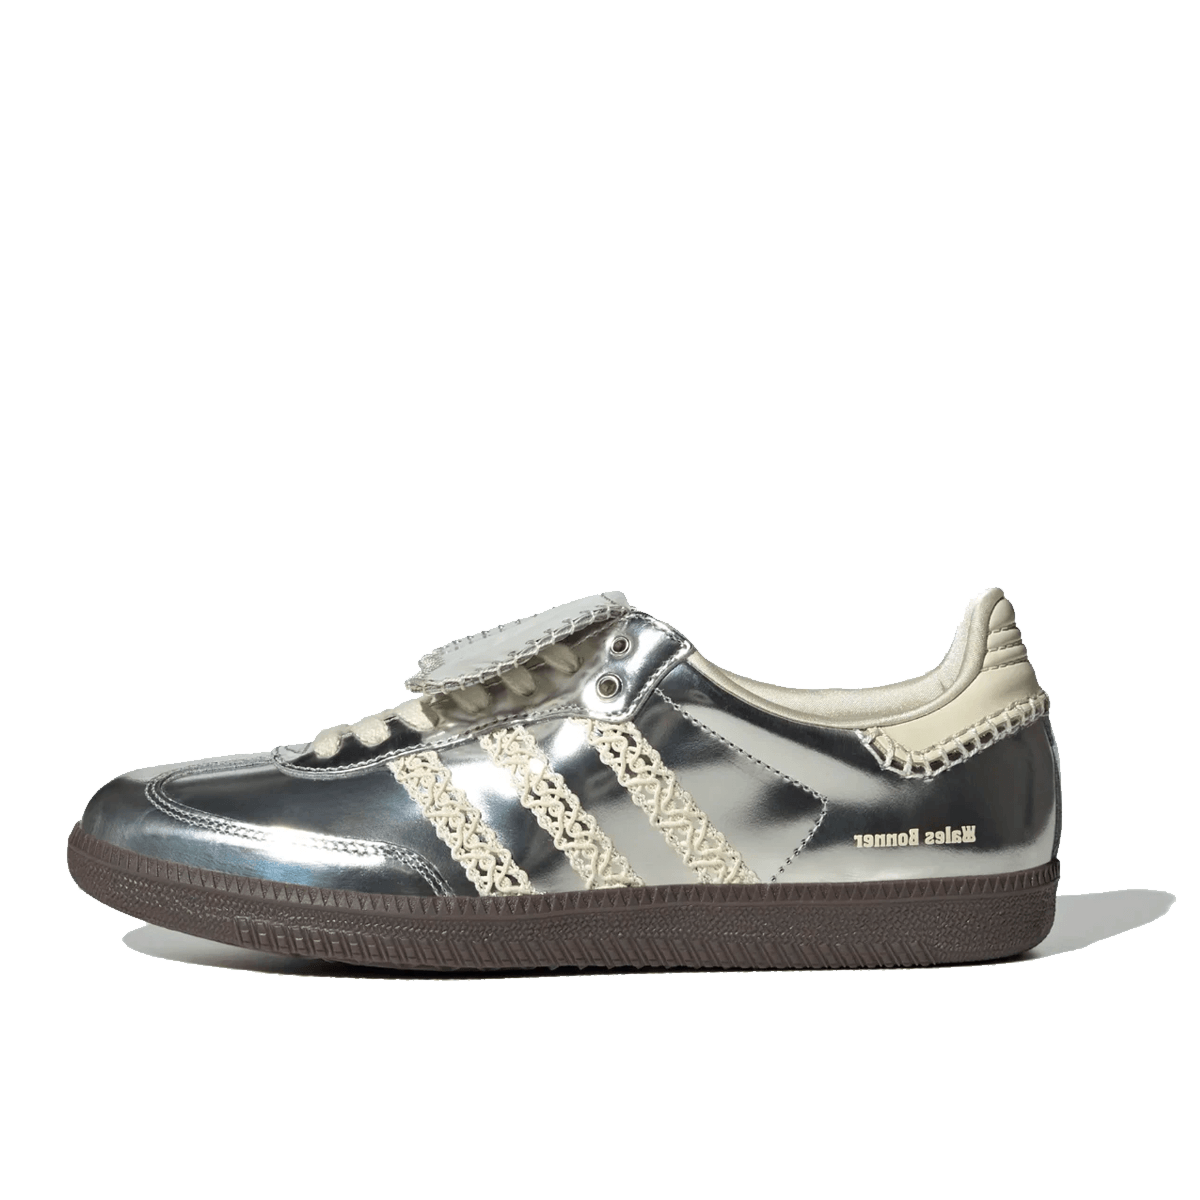 Wales Bonner x adidas Samba 'Metallic Silver' | IG8181 | Sneakerjagers